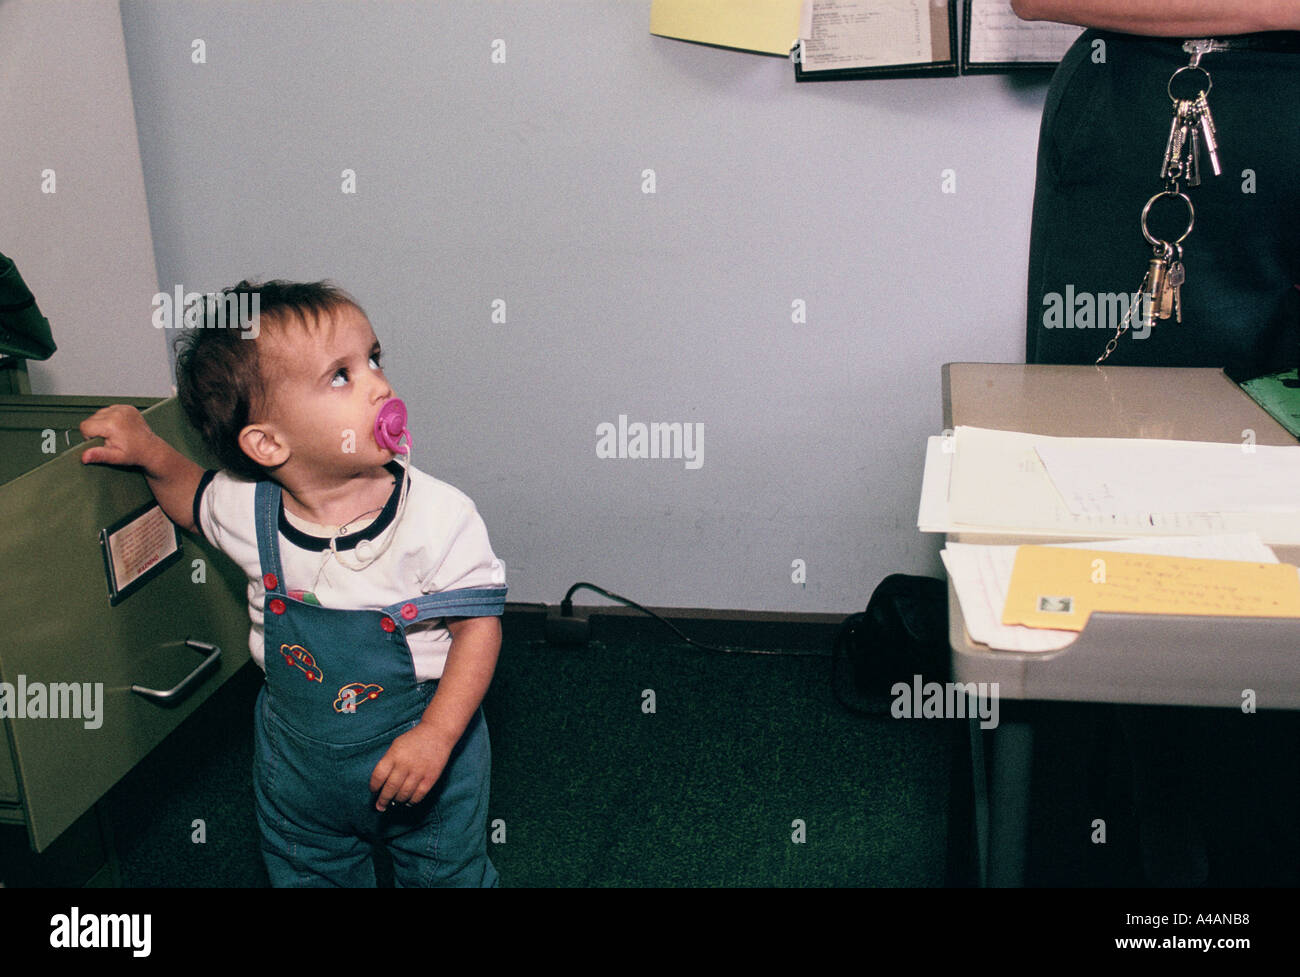 Ein Kind im Gefängnis Büro sieht in einem Gefängnis Offizier, der trägt eine Reihe von glänzenden Schlüssel. Stockfoto